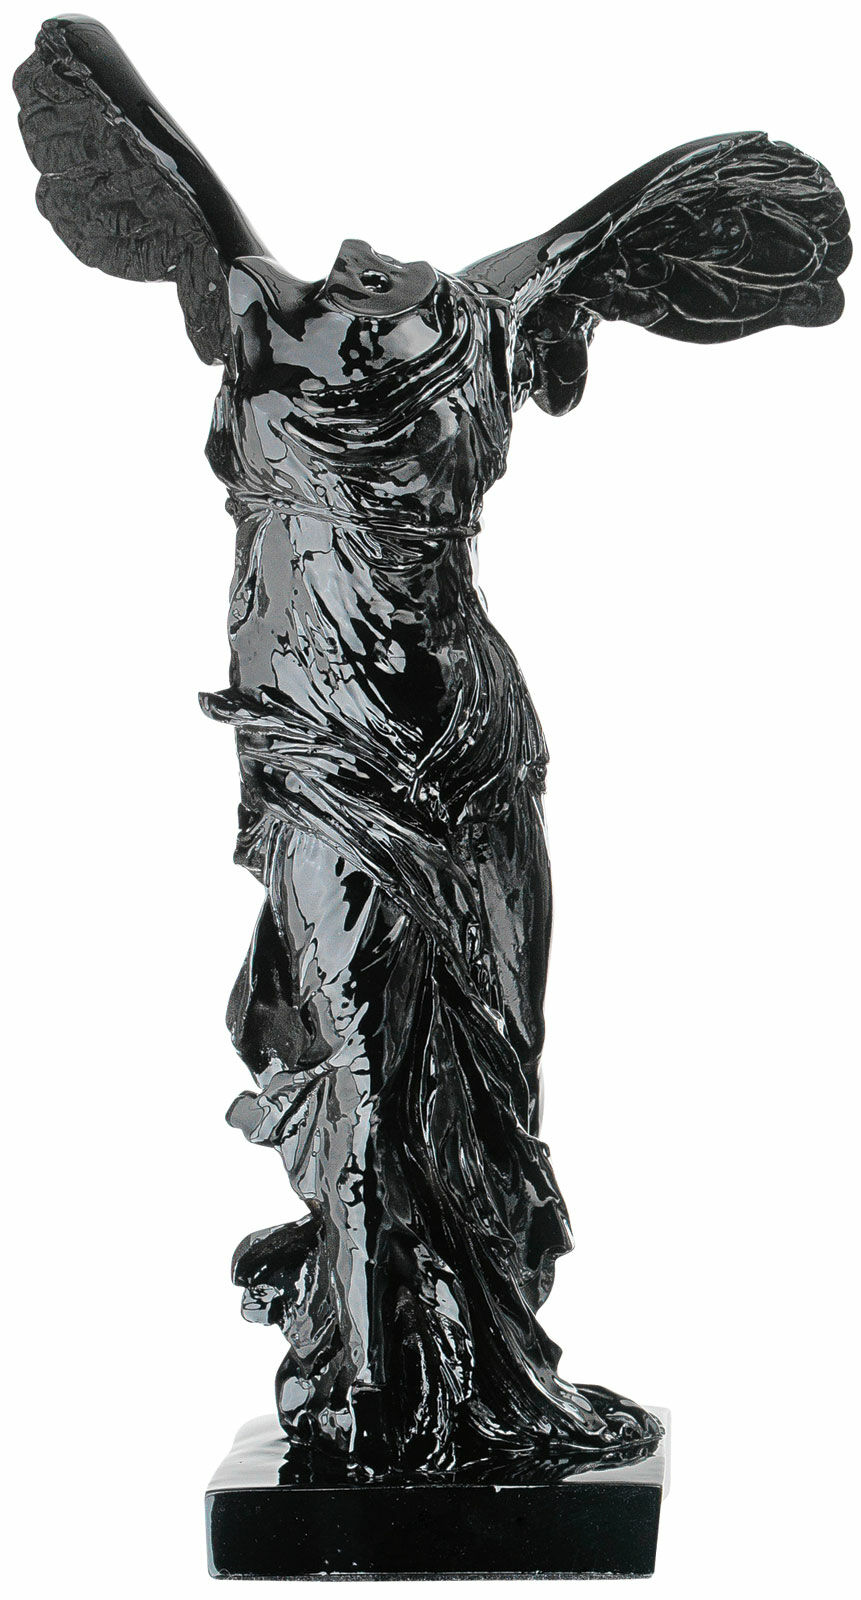 Skulptur "Nike från Samothrake", svart gjutgods